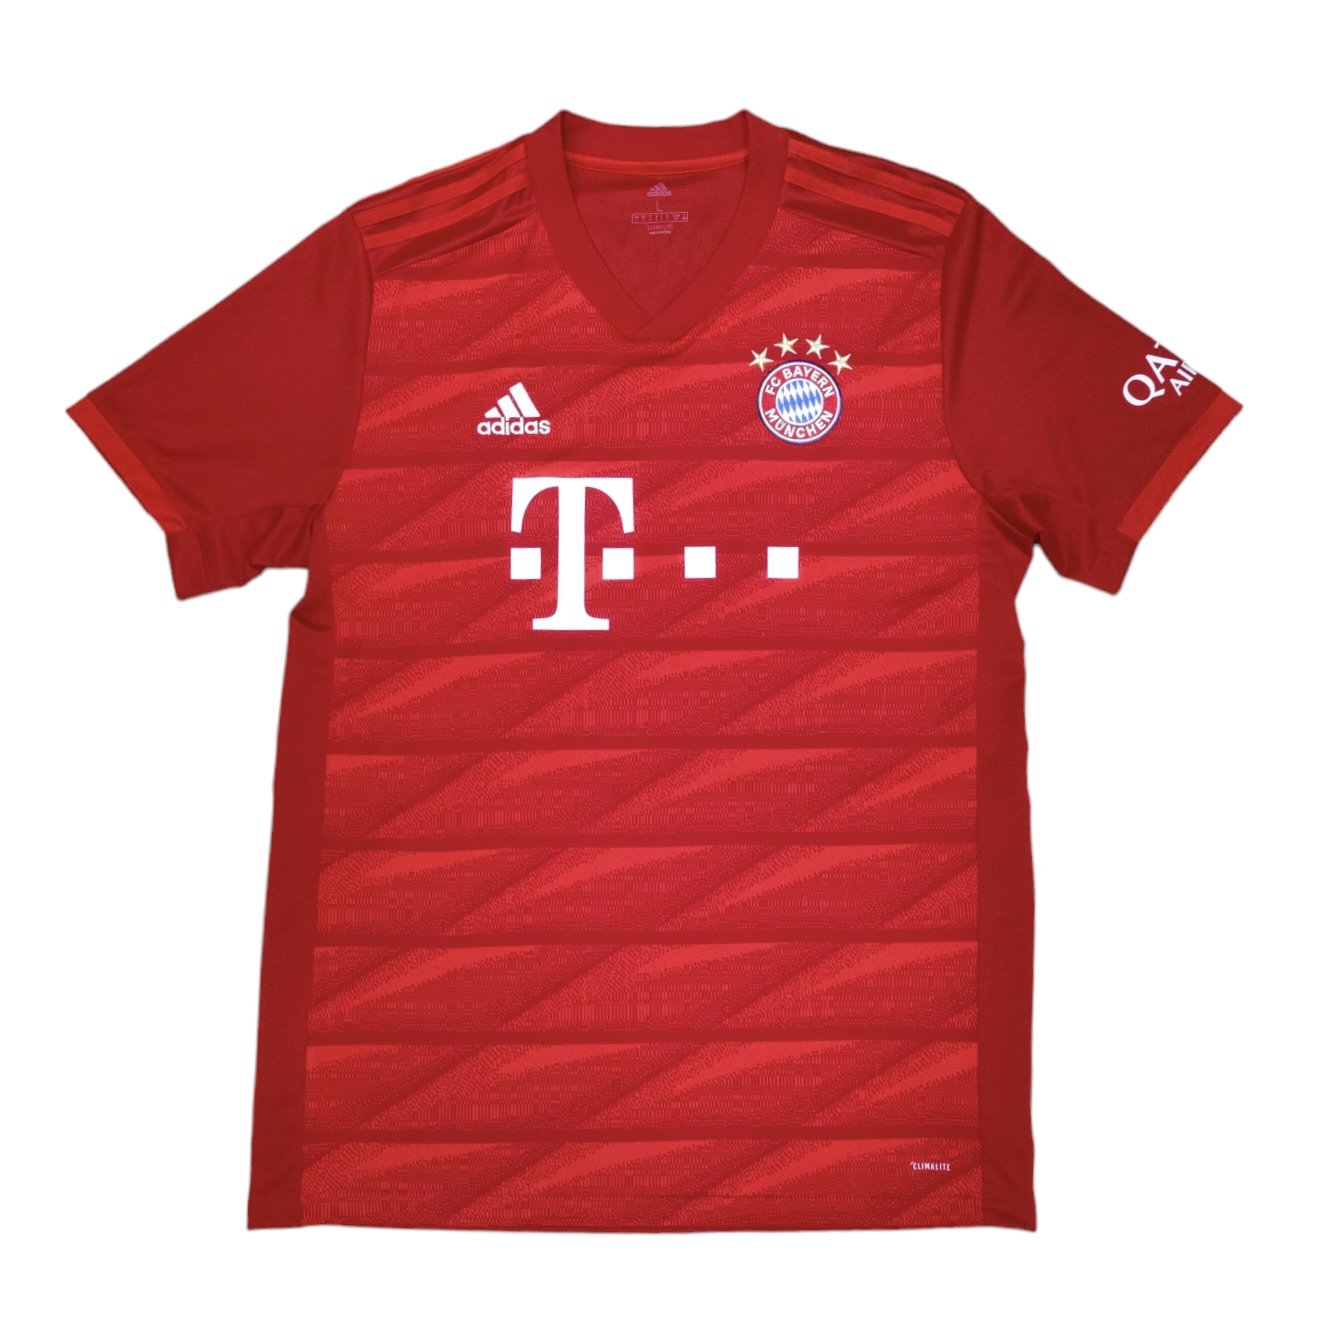 Adidas Bayern Munich 2019/2020 Home Football Jersey